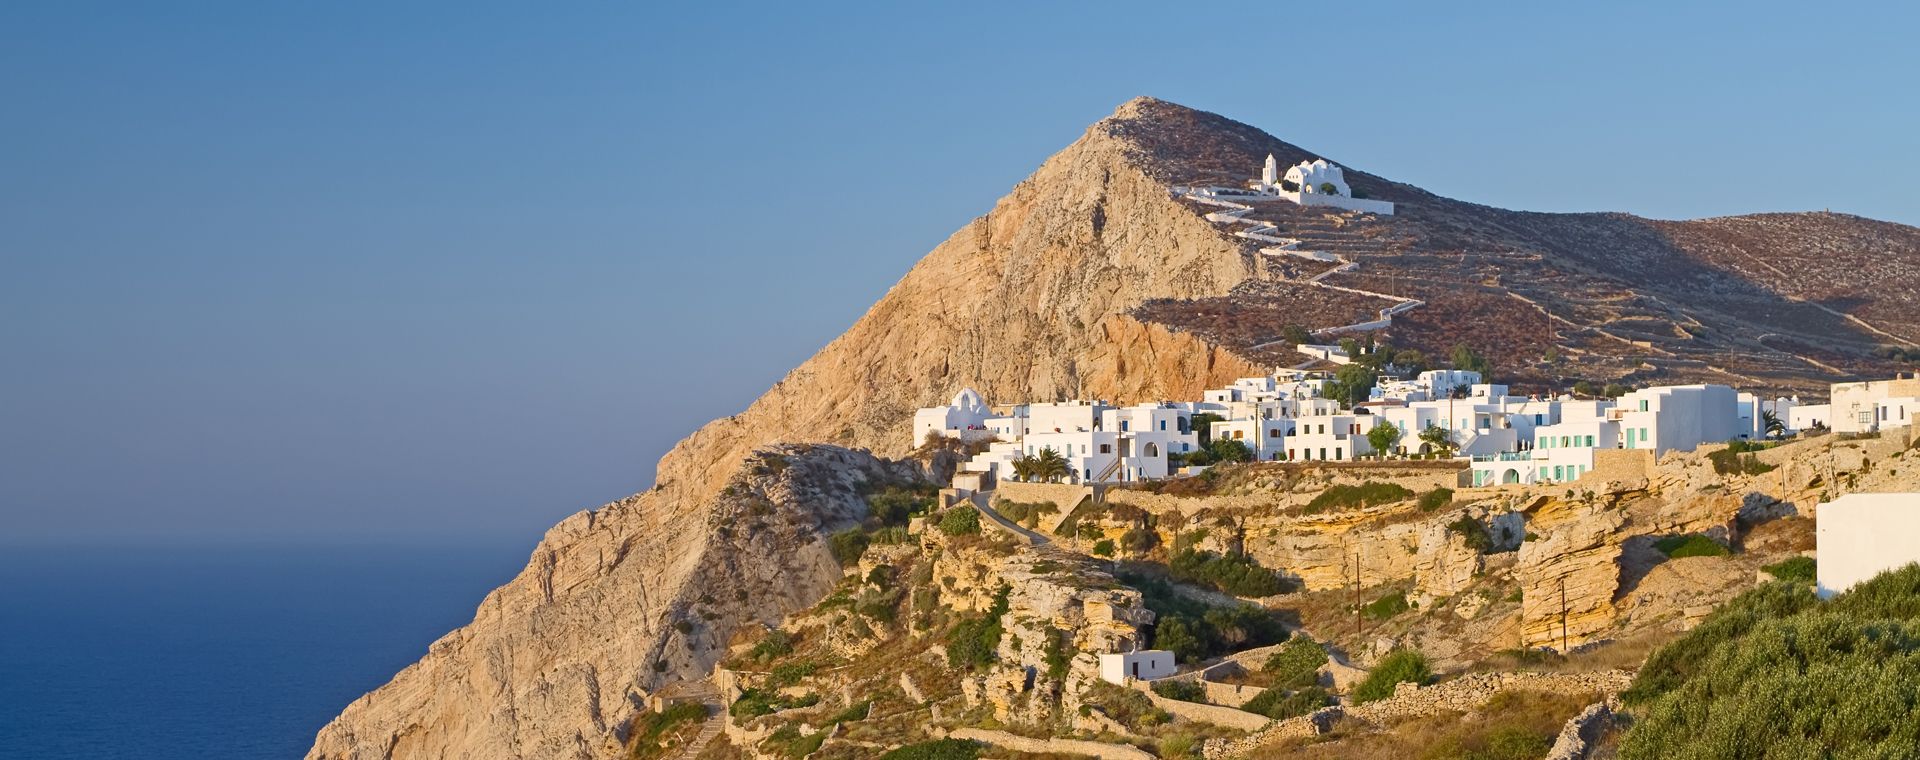 L'île de Folégandros, dans les Cyclades, en Grèce